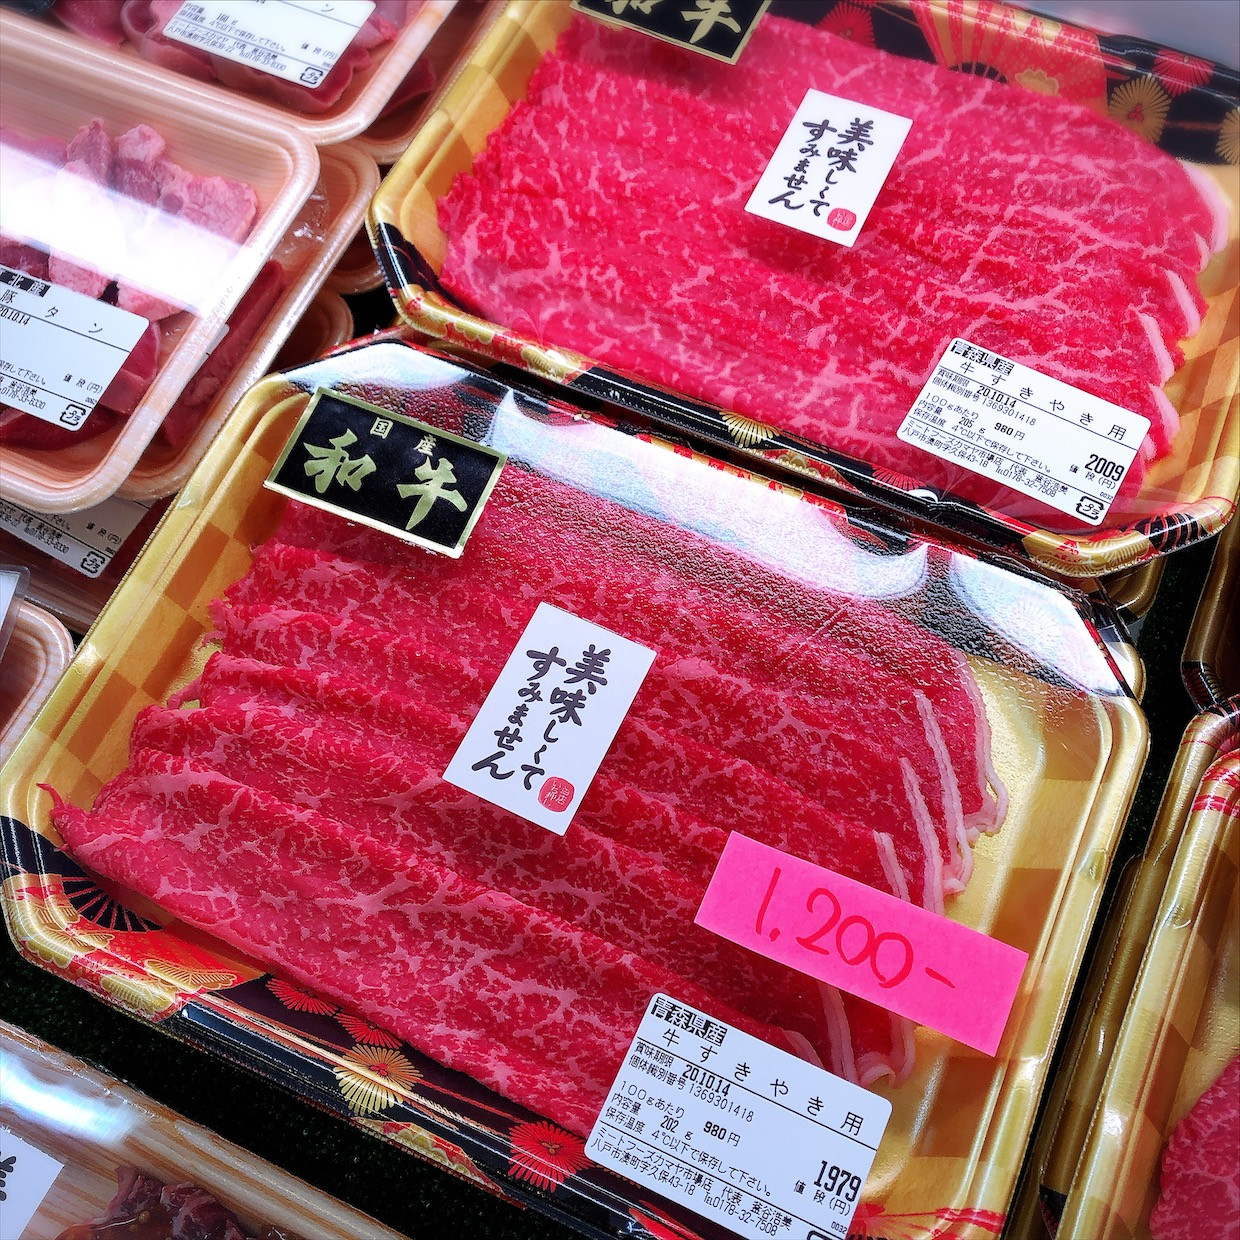 本日は青森県産和牛すき焼き用がお買得です。